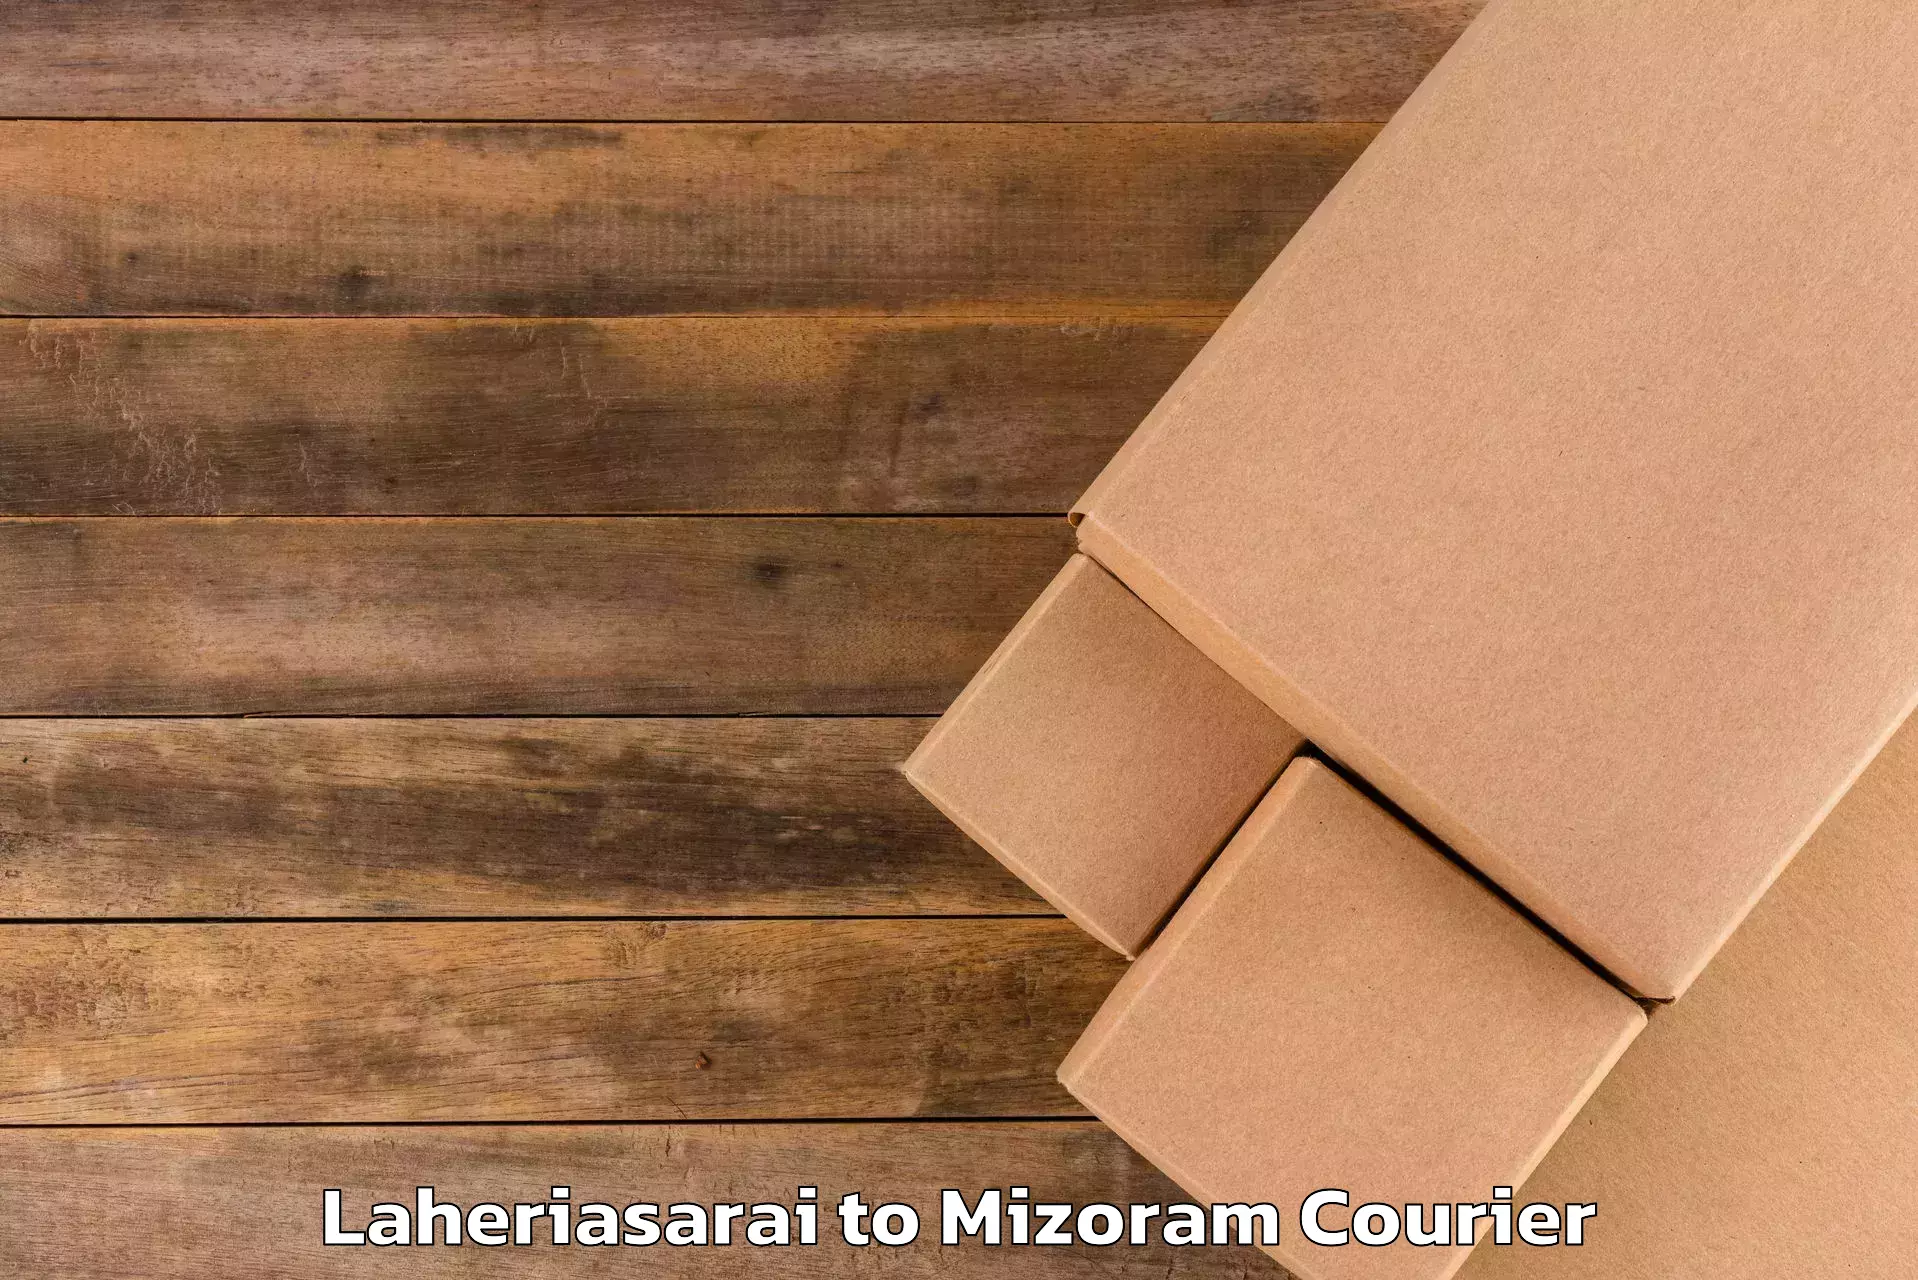 Luggage delivery optimization Laheriasarai to Mizoram